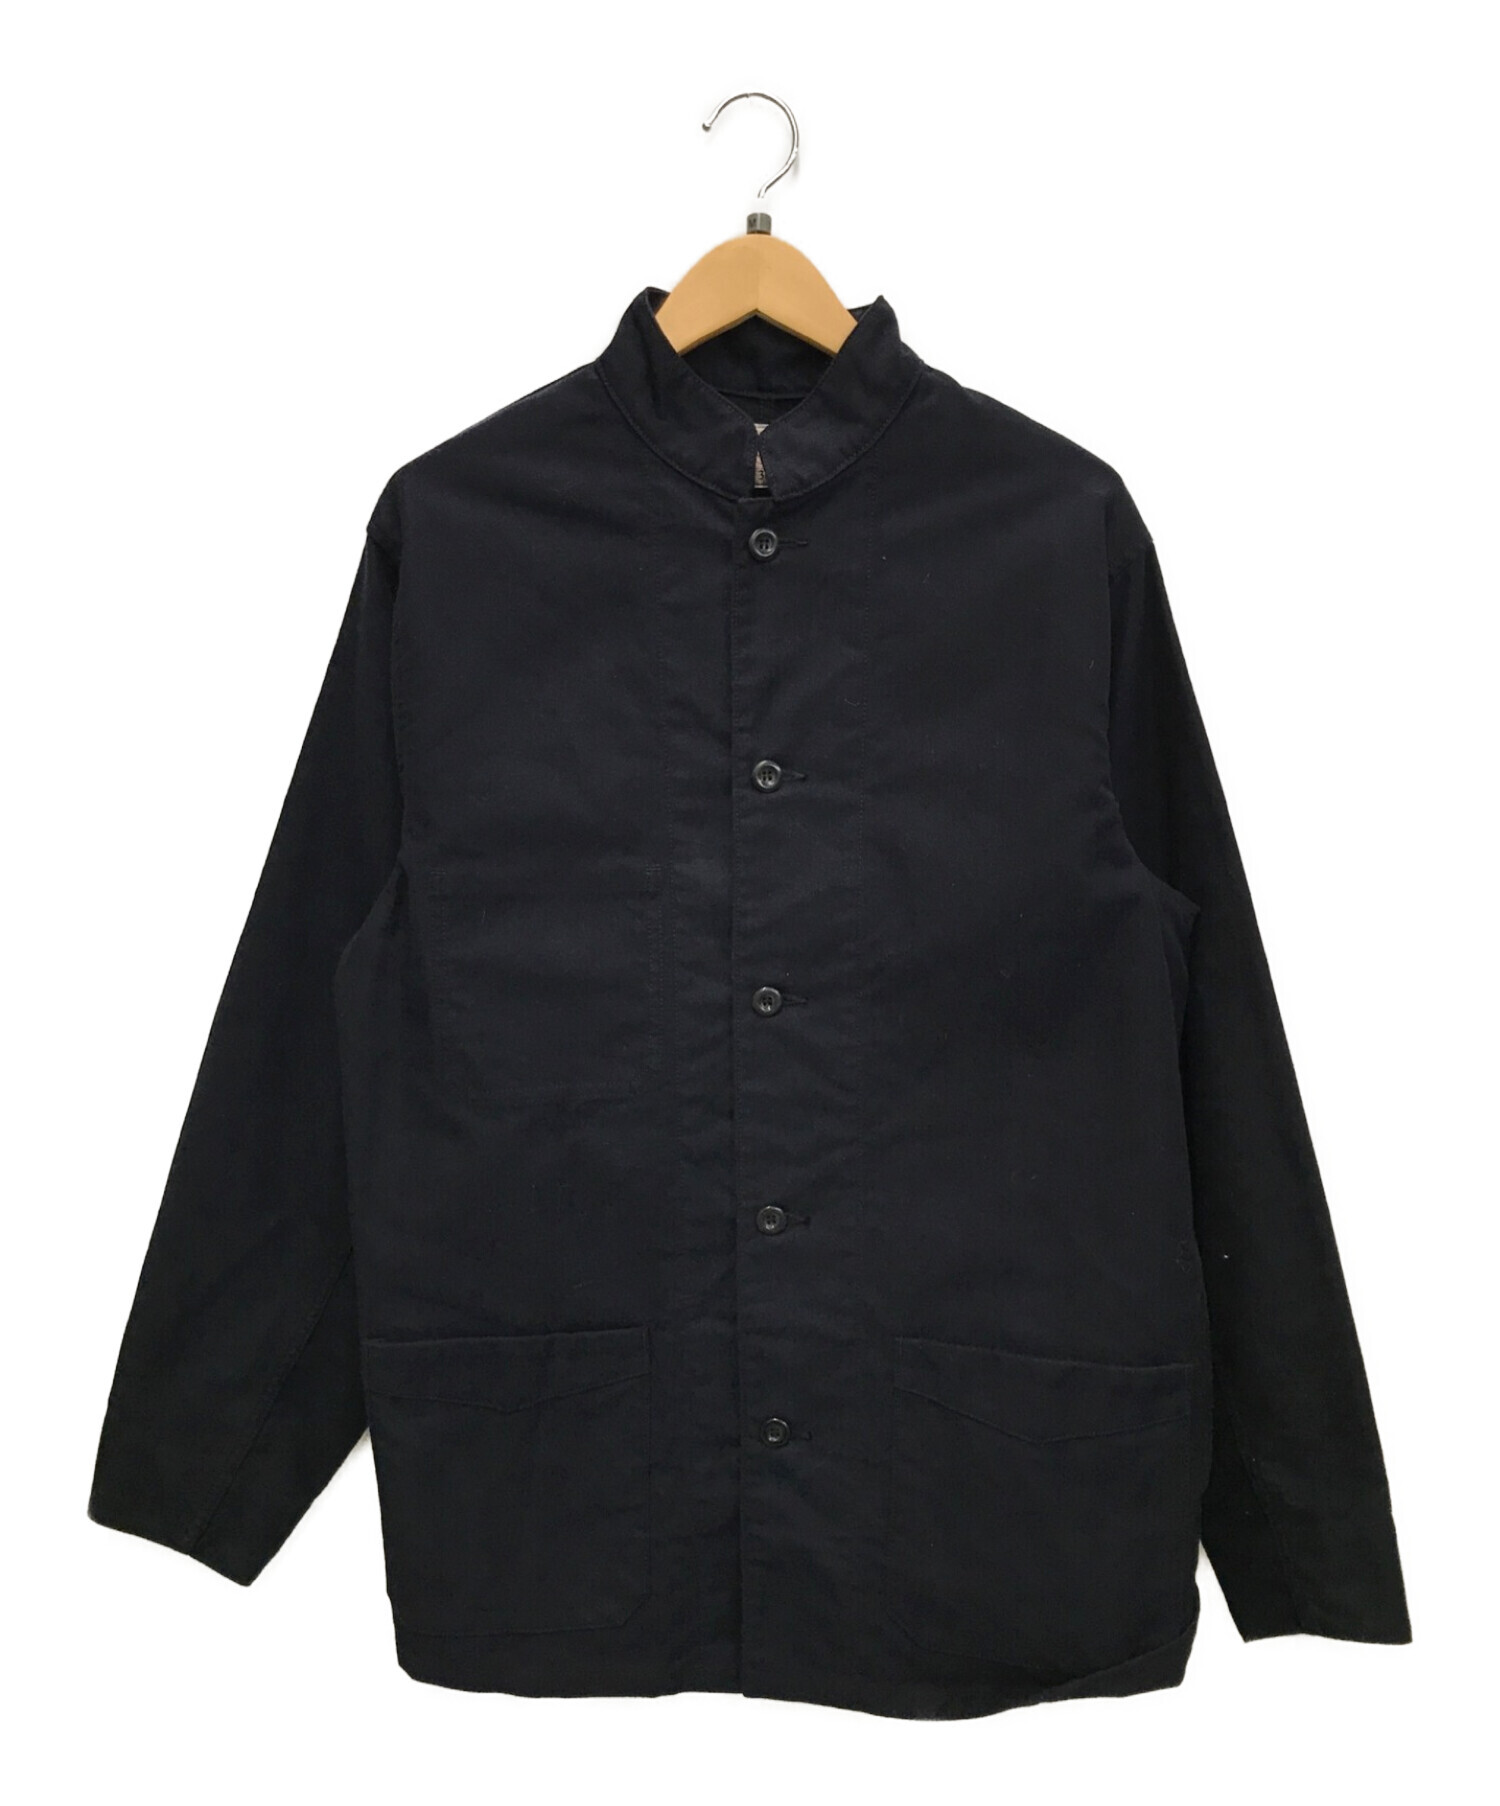 BONCOURA (ボンクラ) イングリッシュワークジャケット モールスキン ブラック サイズ:36